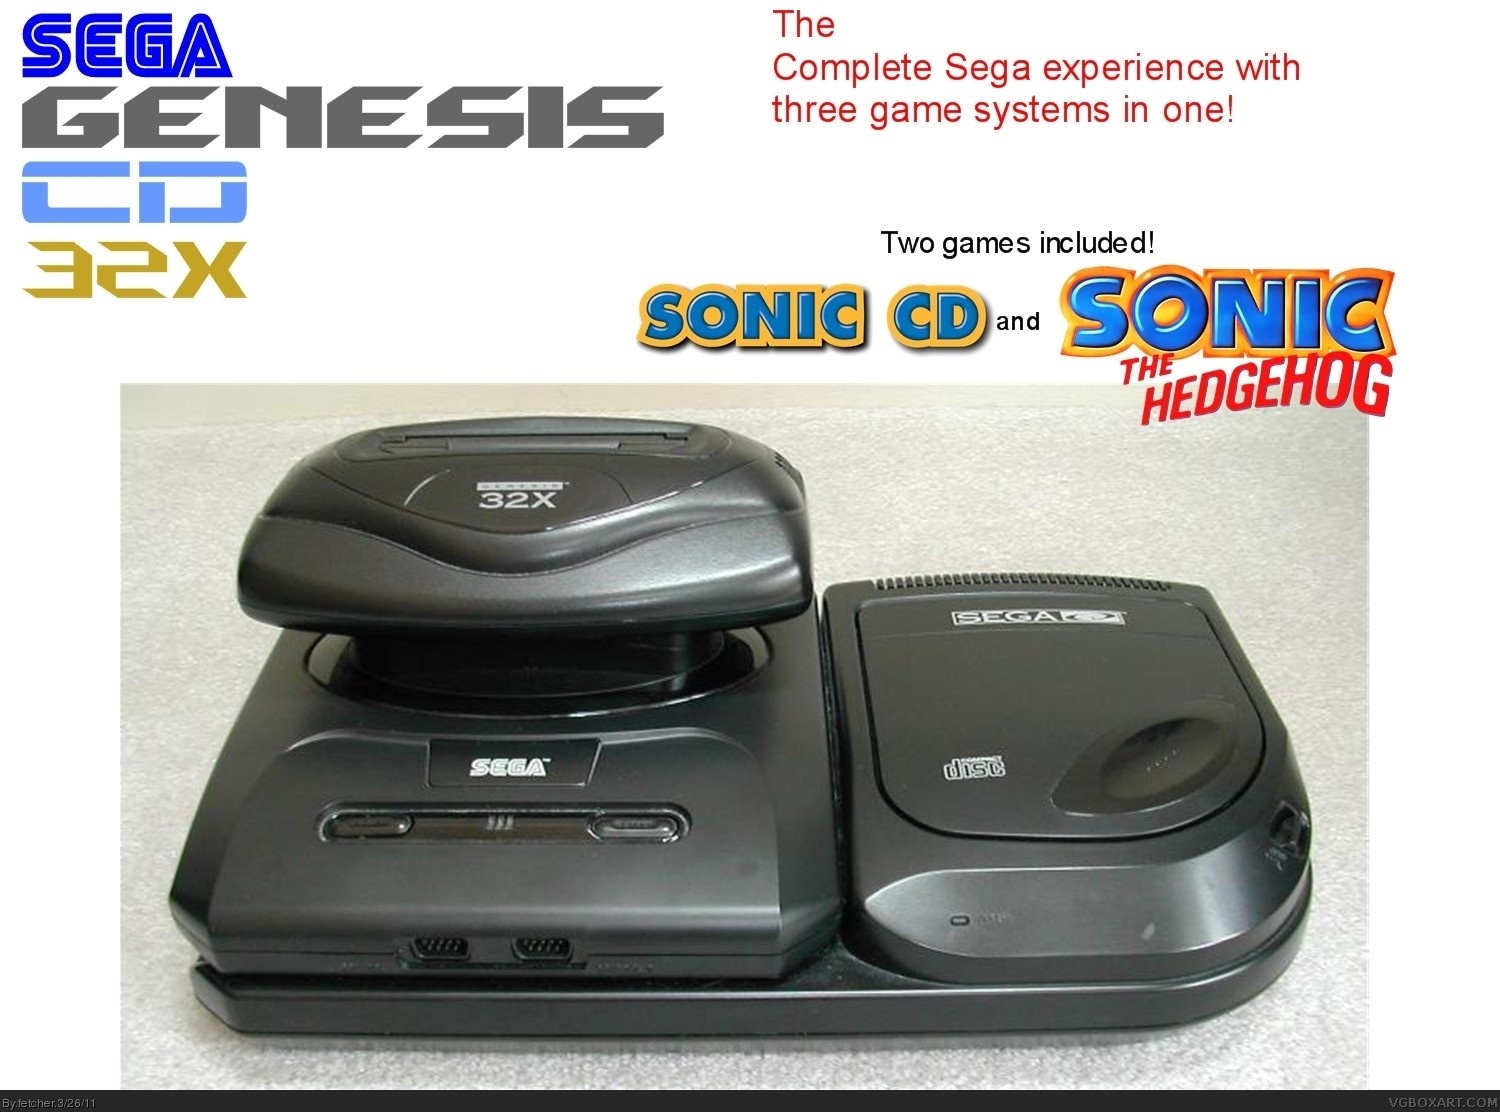 Sega 32X CD box cover